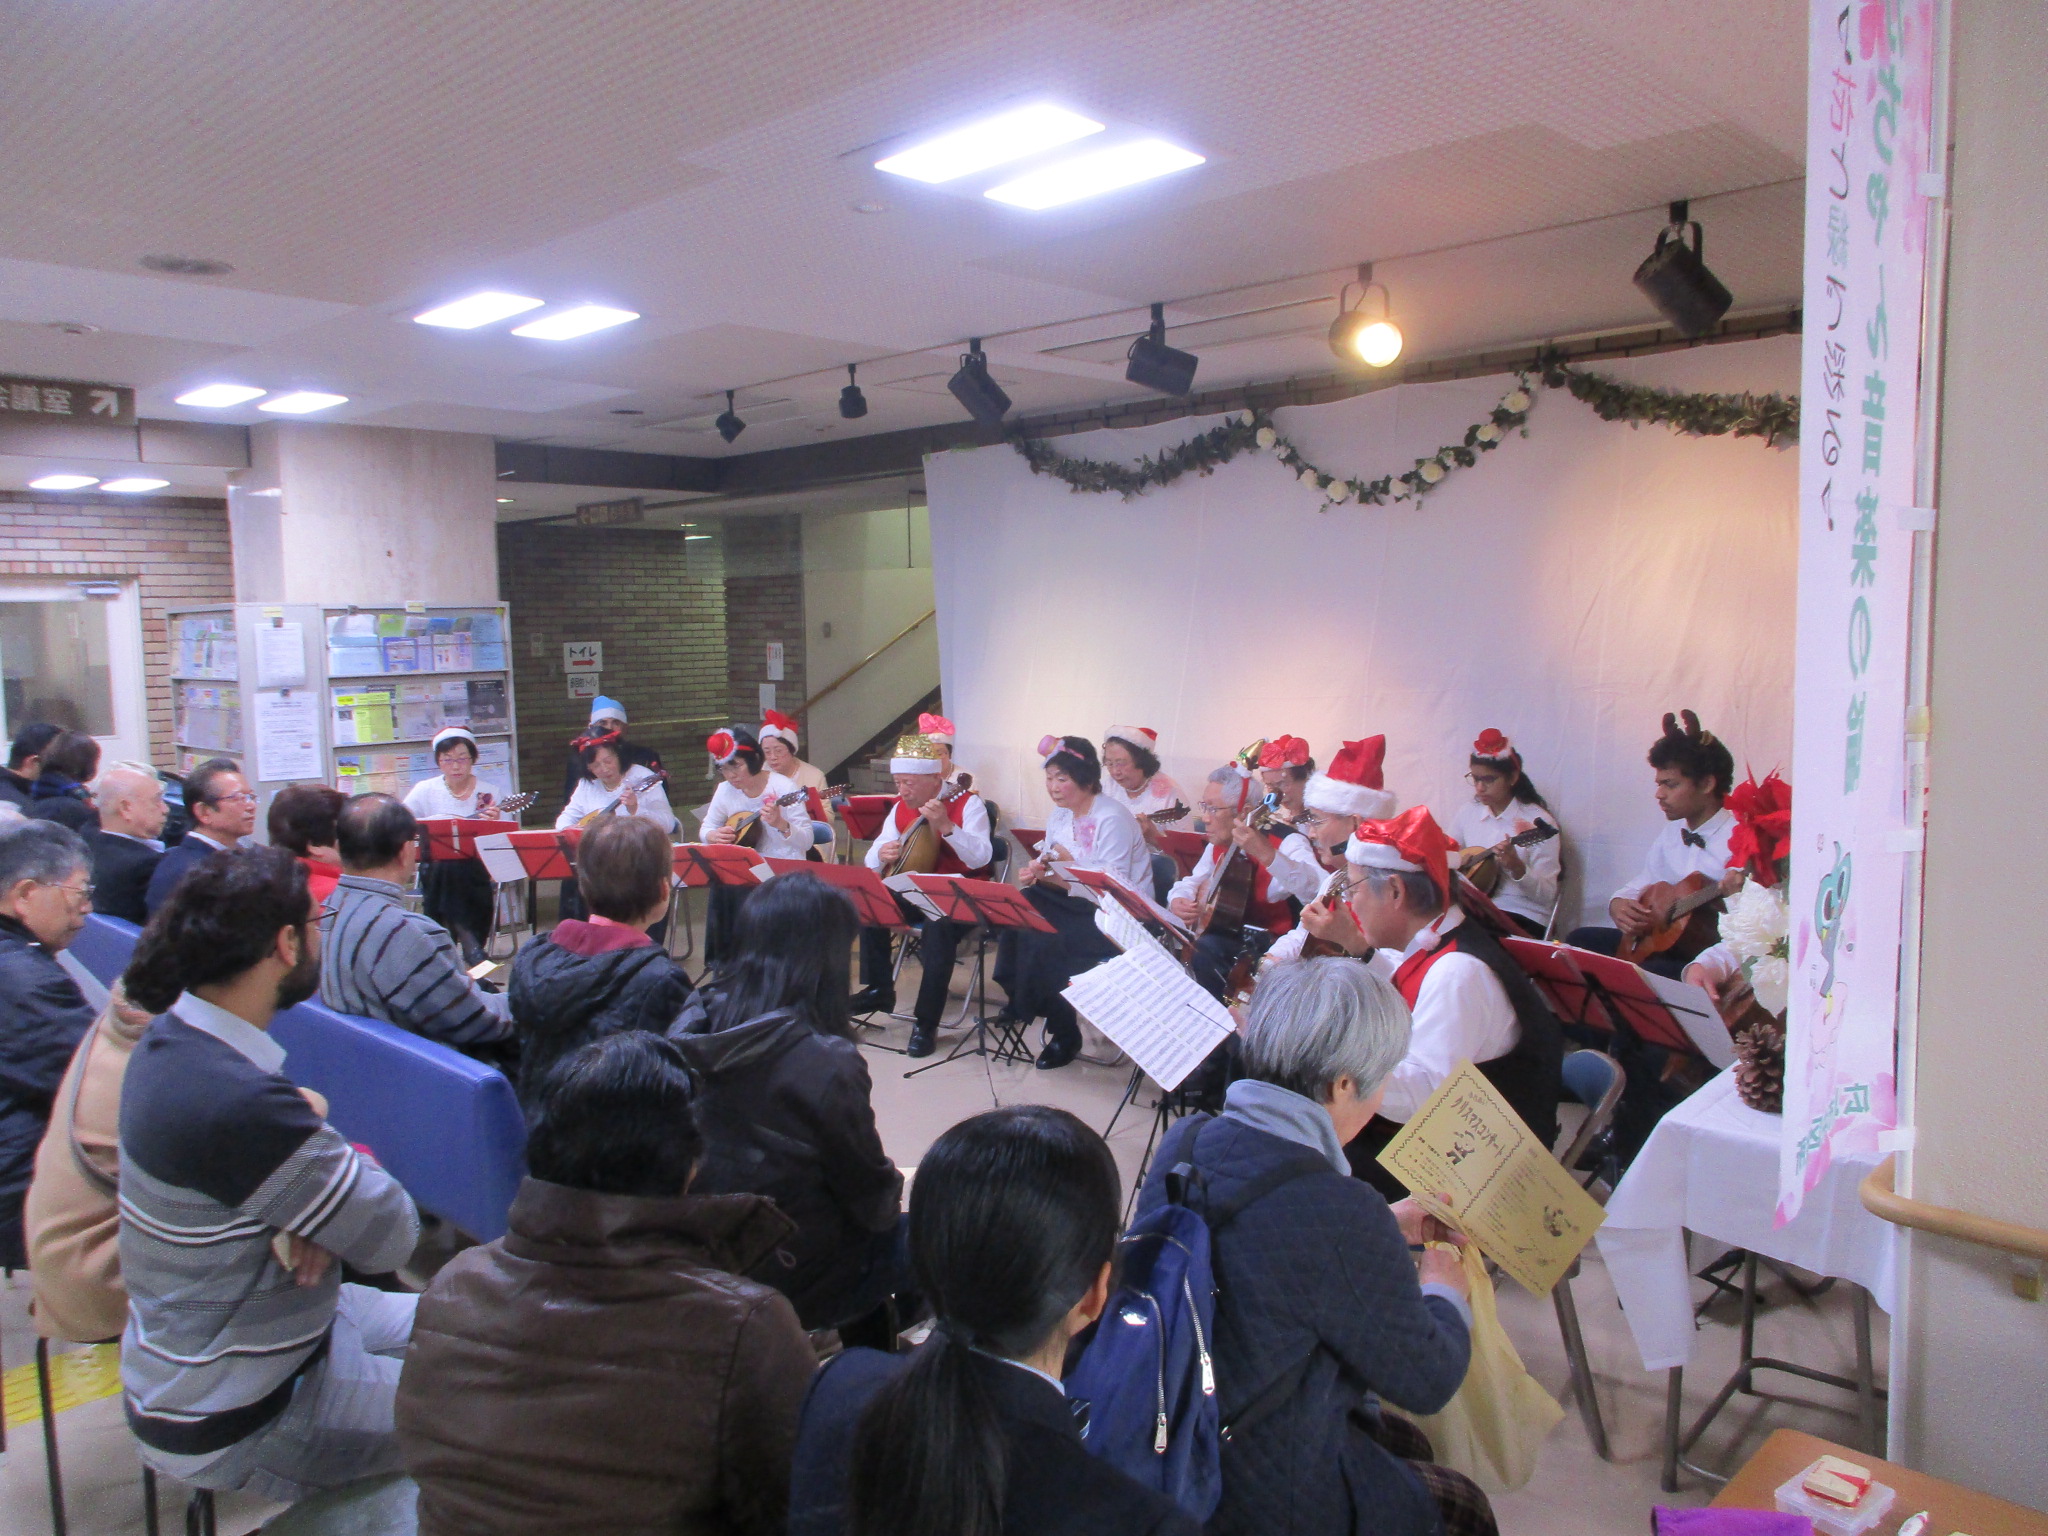 クリスマスコンサート@竹屋公民館の画像2